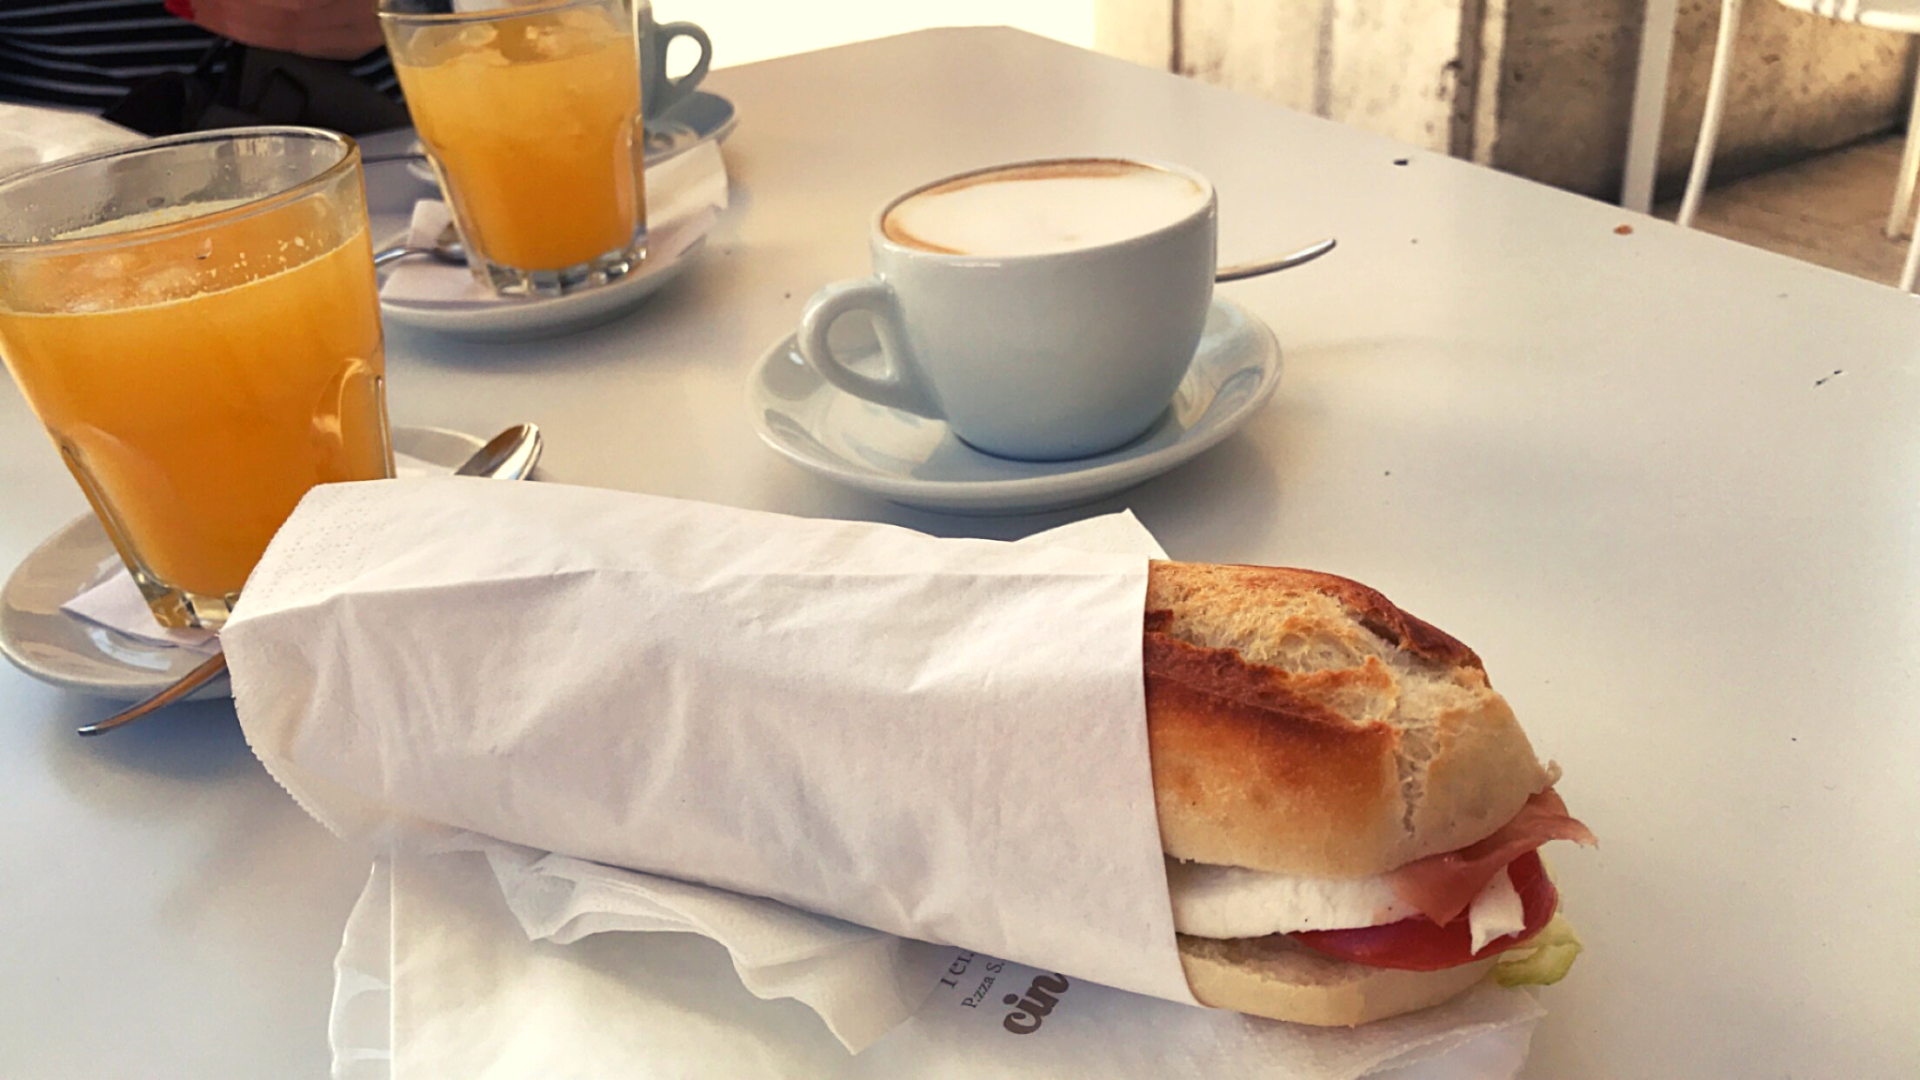 breakfast sandwich tomato mozzarella orange juice cups cappuccino coffee white table